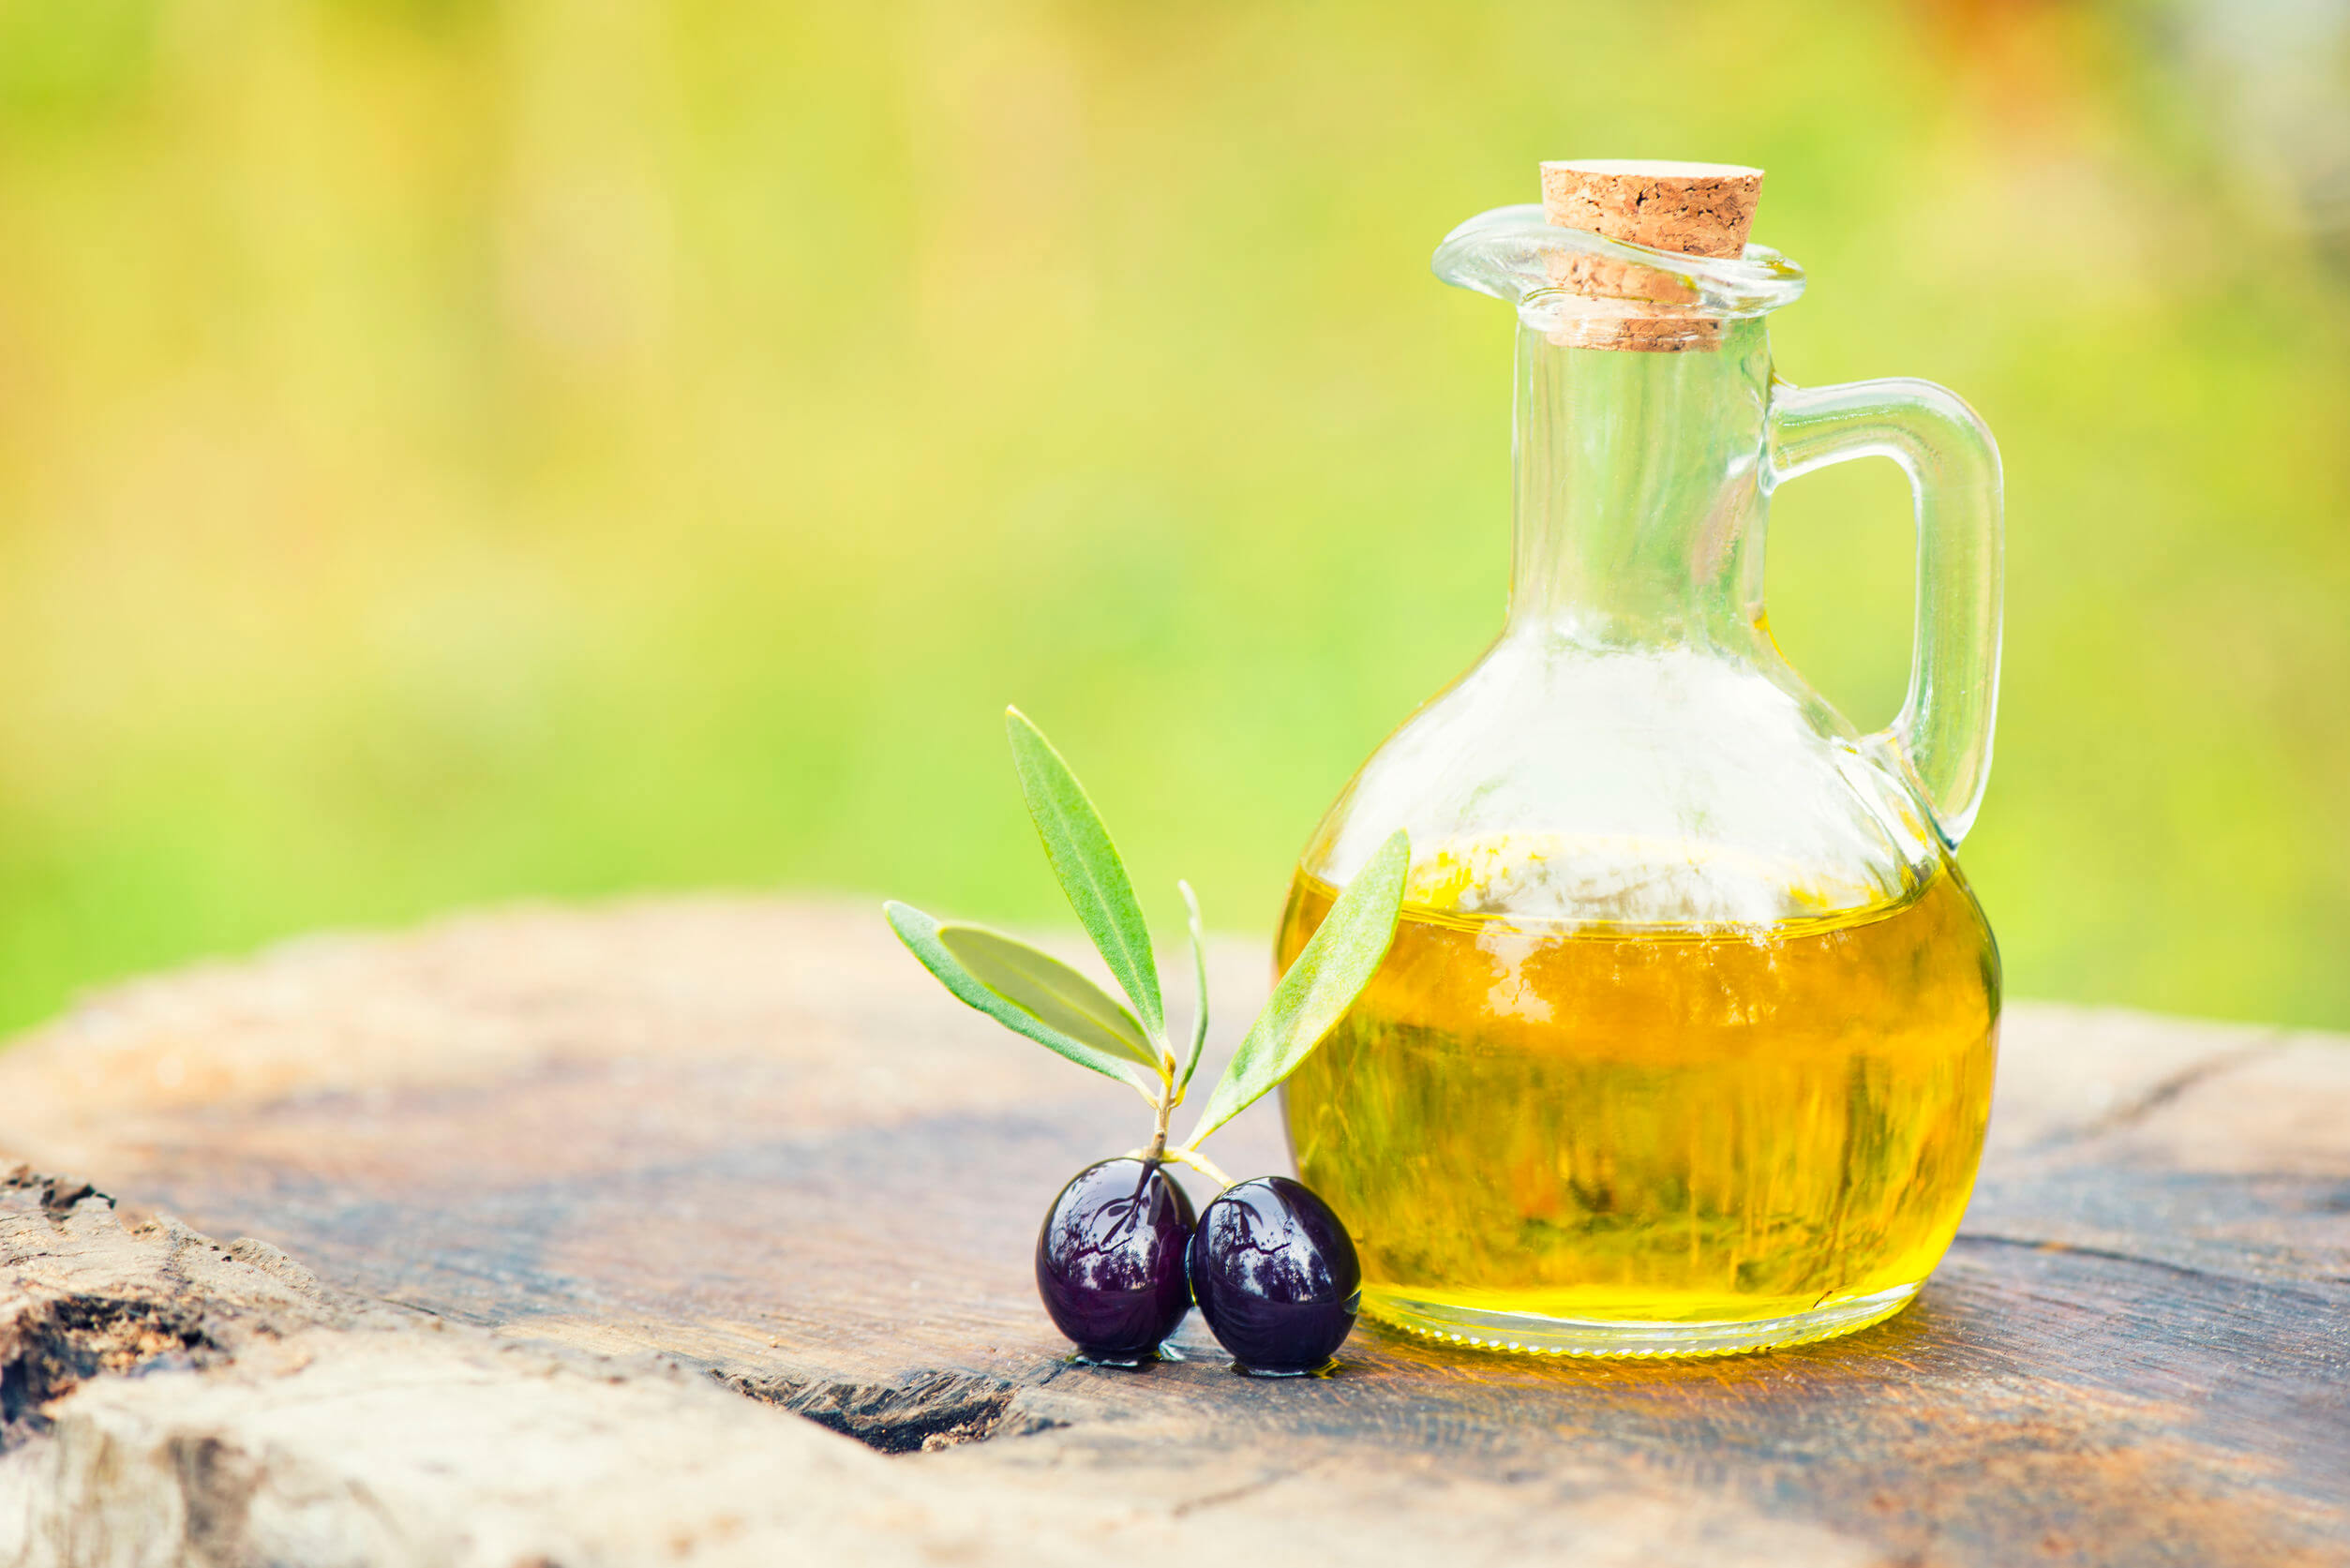 L'olio d'oliva ha un ruolo importante in gravidanza